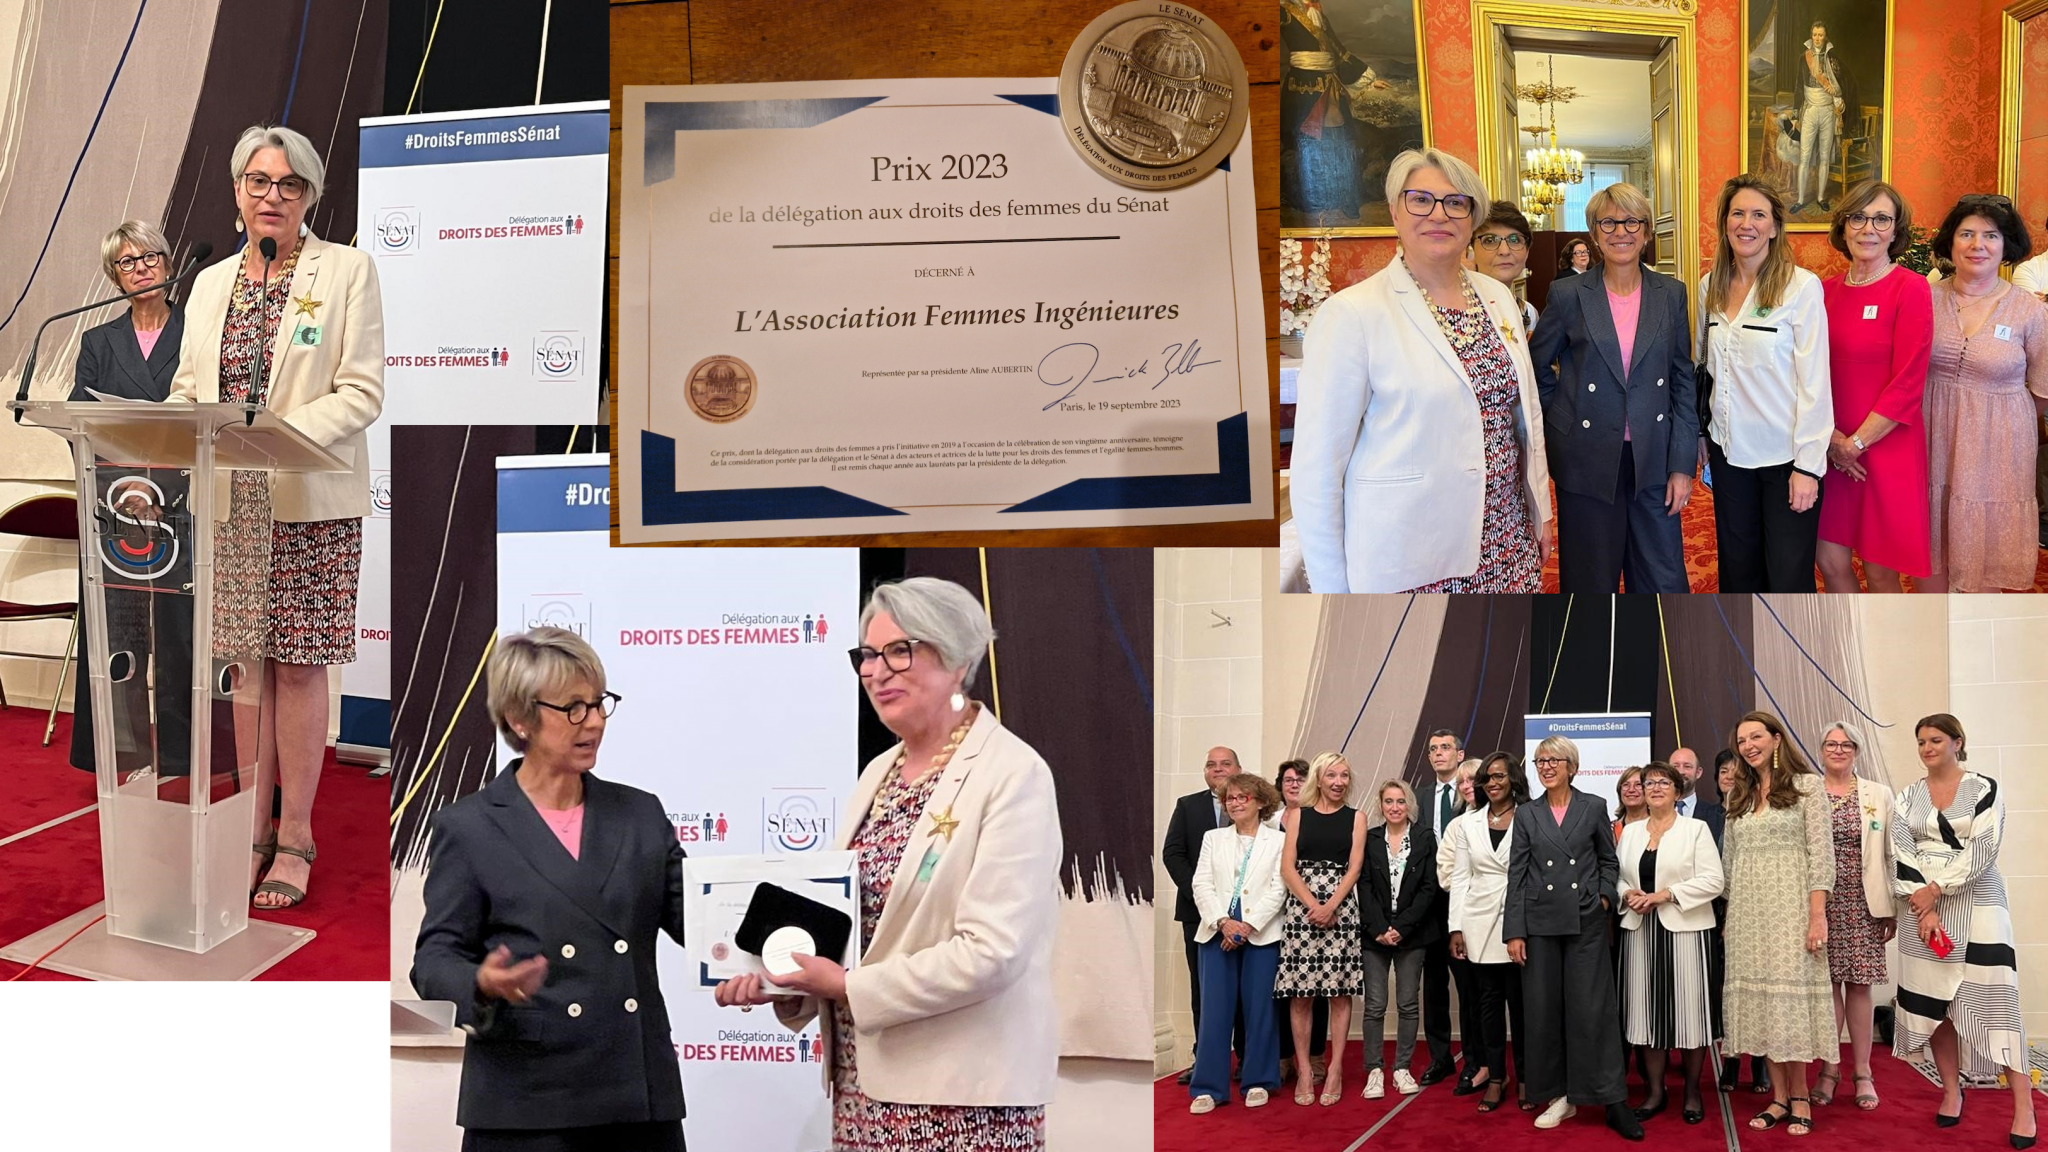 Remise du Prix de la délégation aux droits des femmes du Sénat à l'Association Femmes Ingénieures